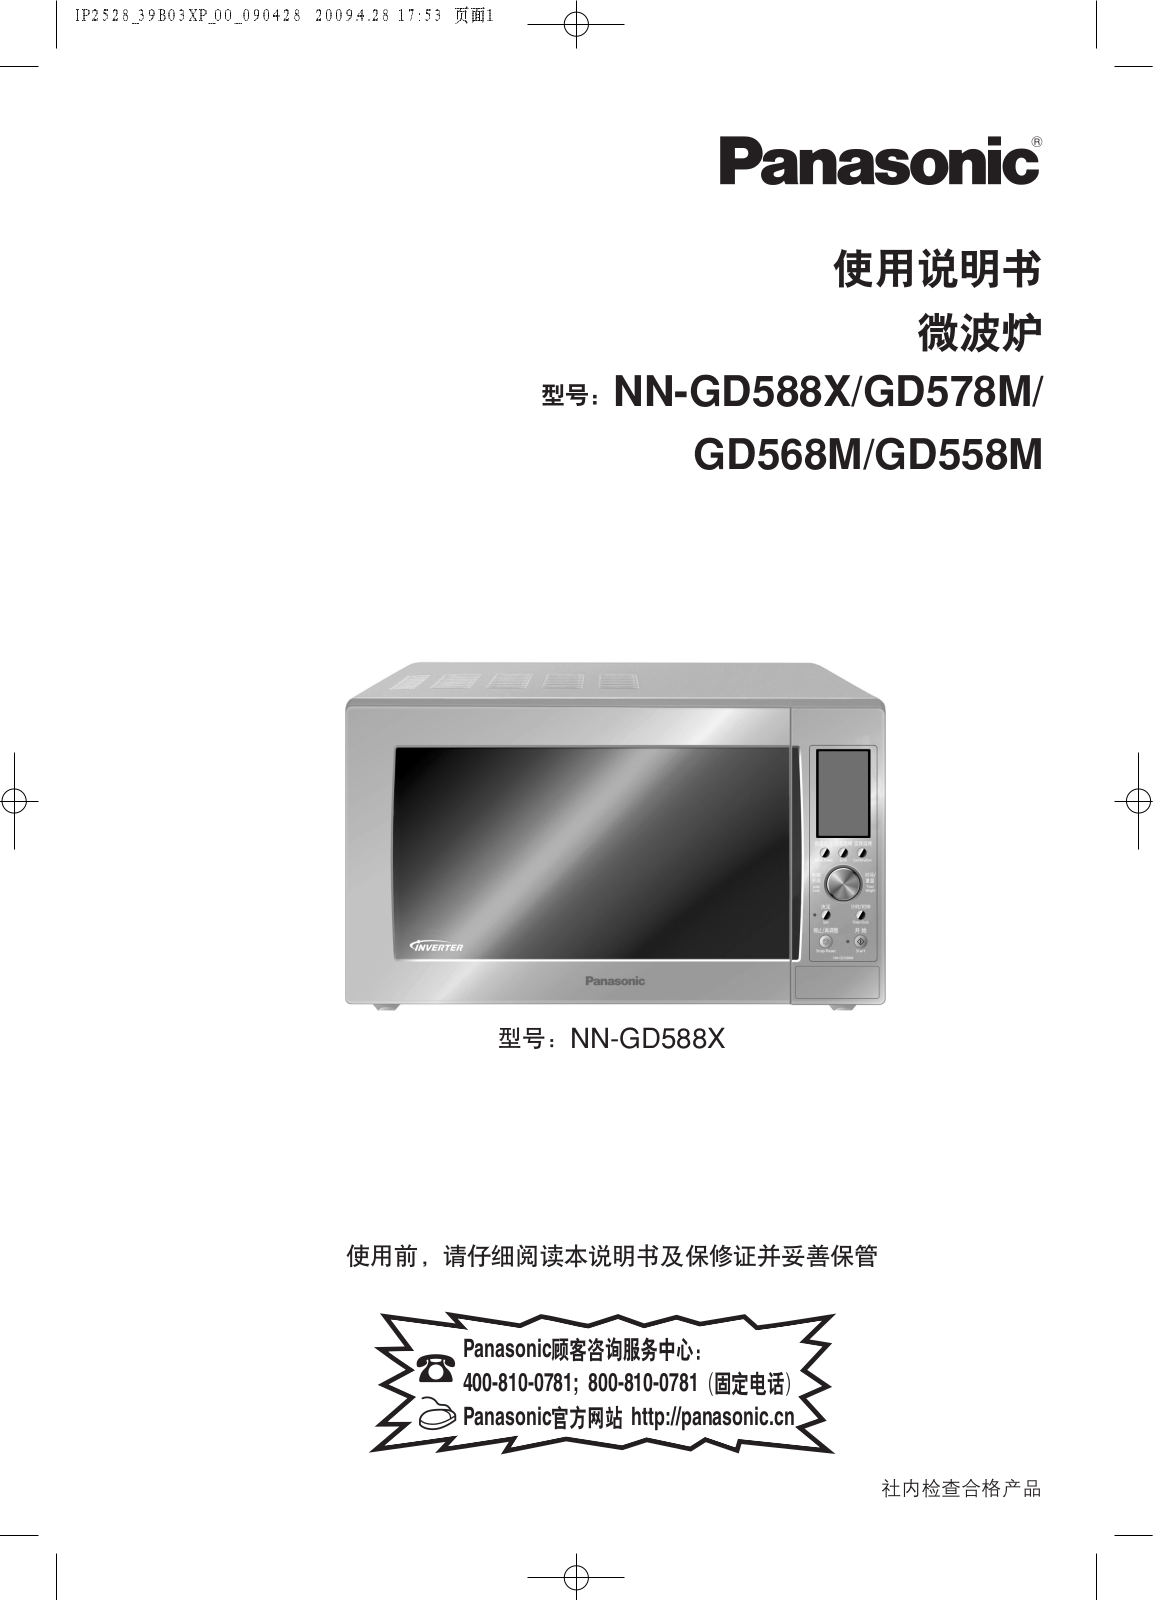 Panasonic NN-GD588X, NN-GD578M, NN-GD568M, NN-GD558M User Manual